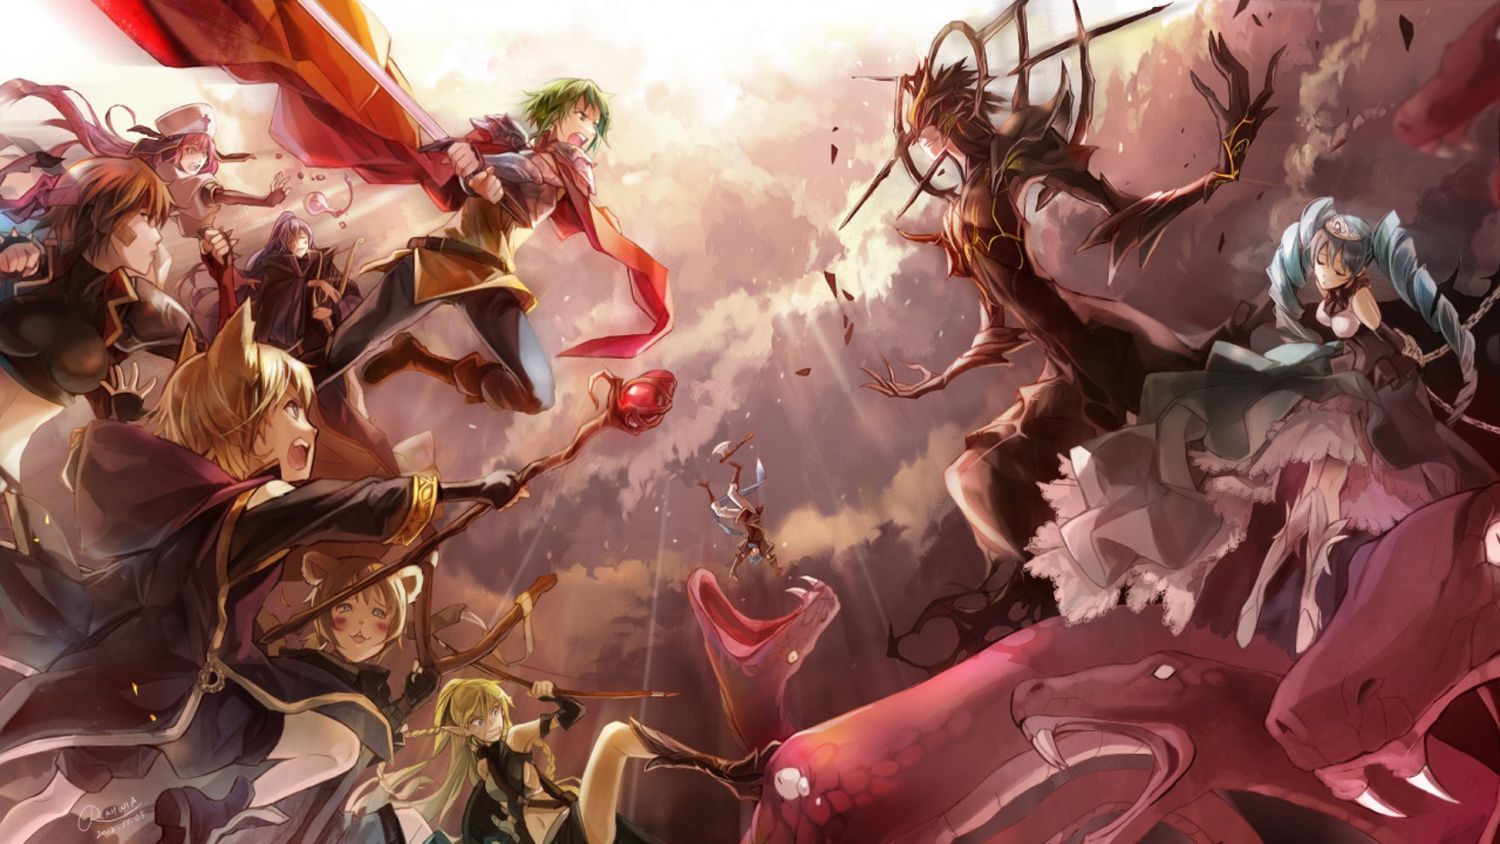 Epic Anime Battle Wallpaper